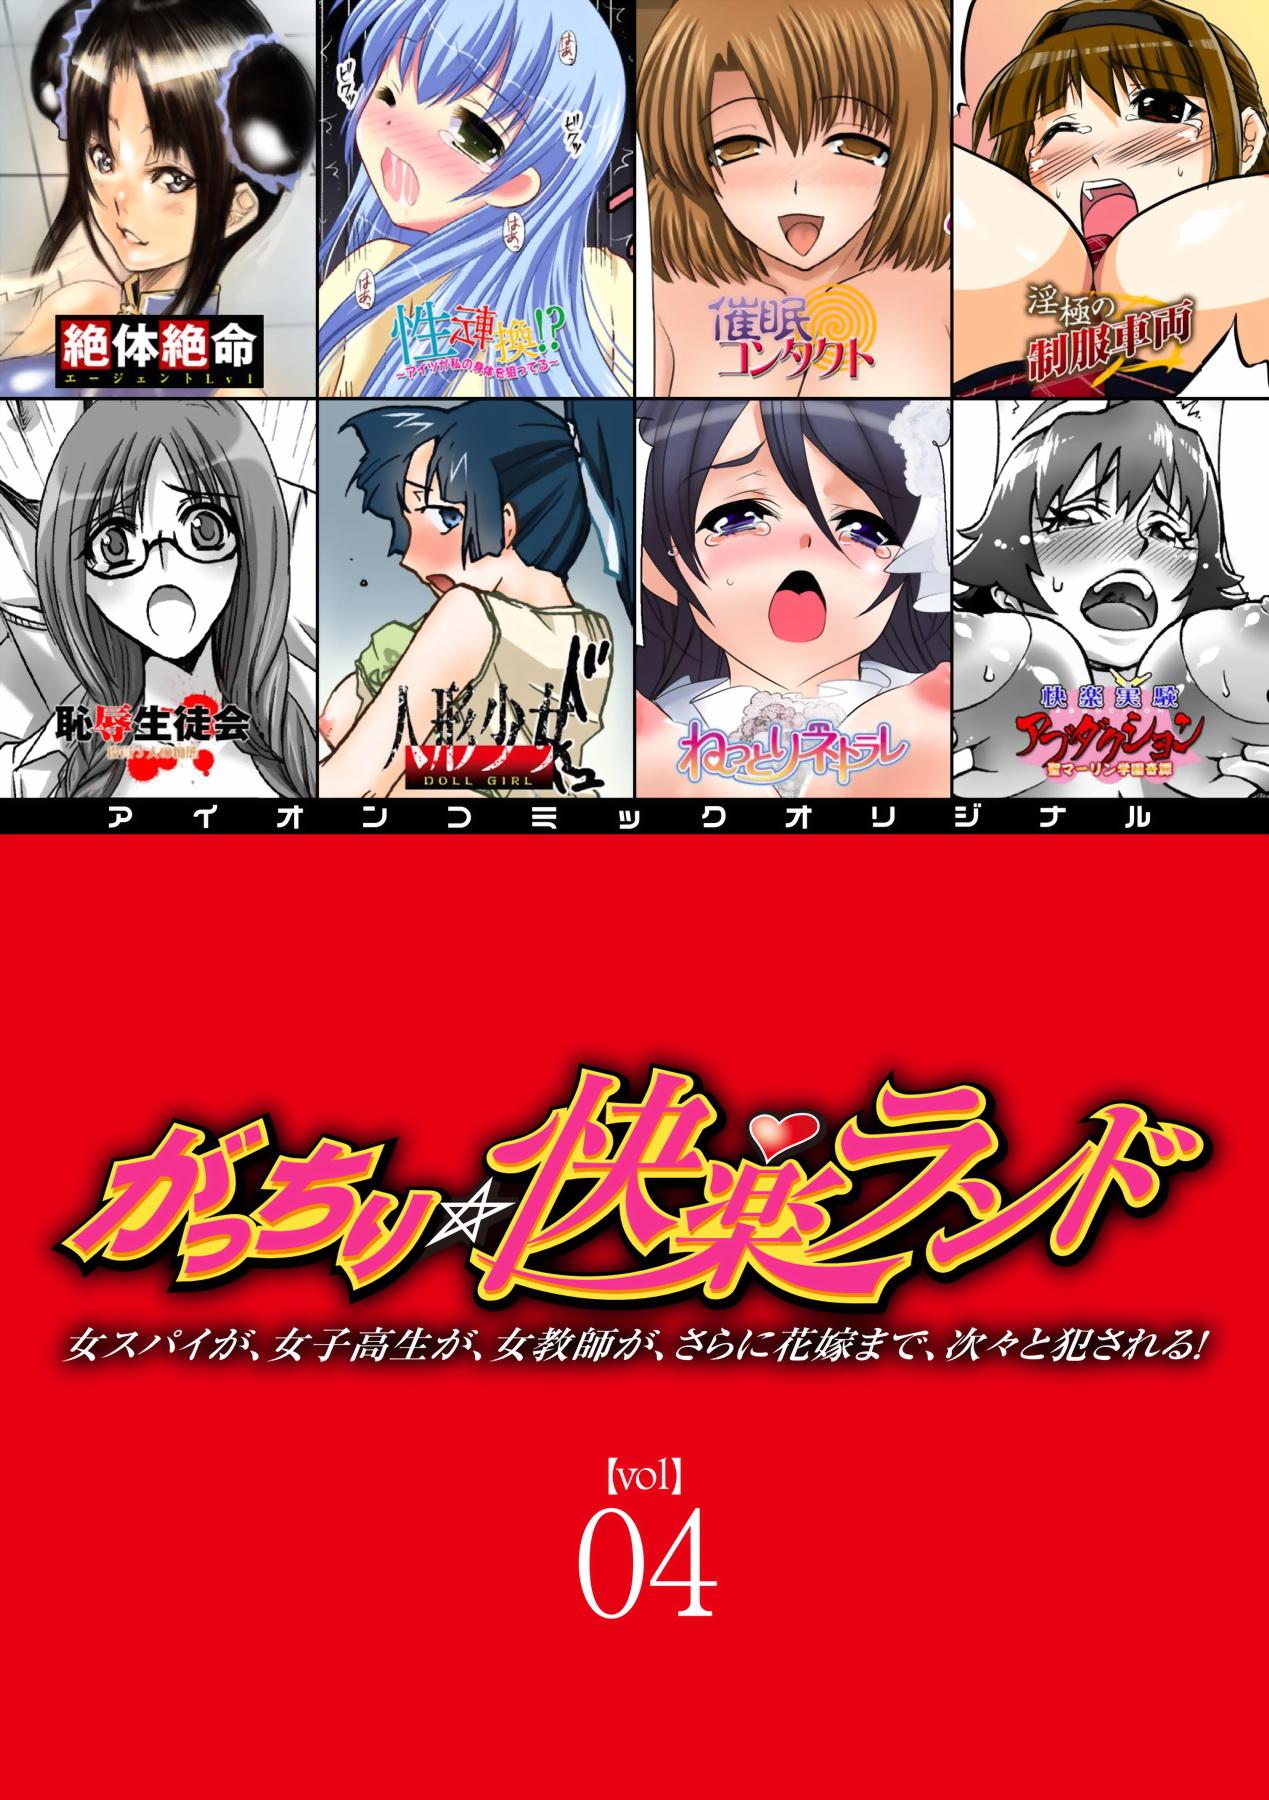 Gatchiri Kairaku Land Vol.4 Onna Spy ga, Joshikousei ga, Jokyoushi ga, Sarani Hanayome Made, Tsugitsugi to Okasareru! 0